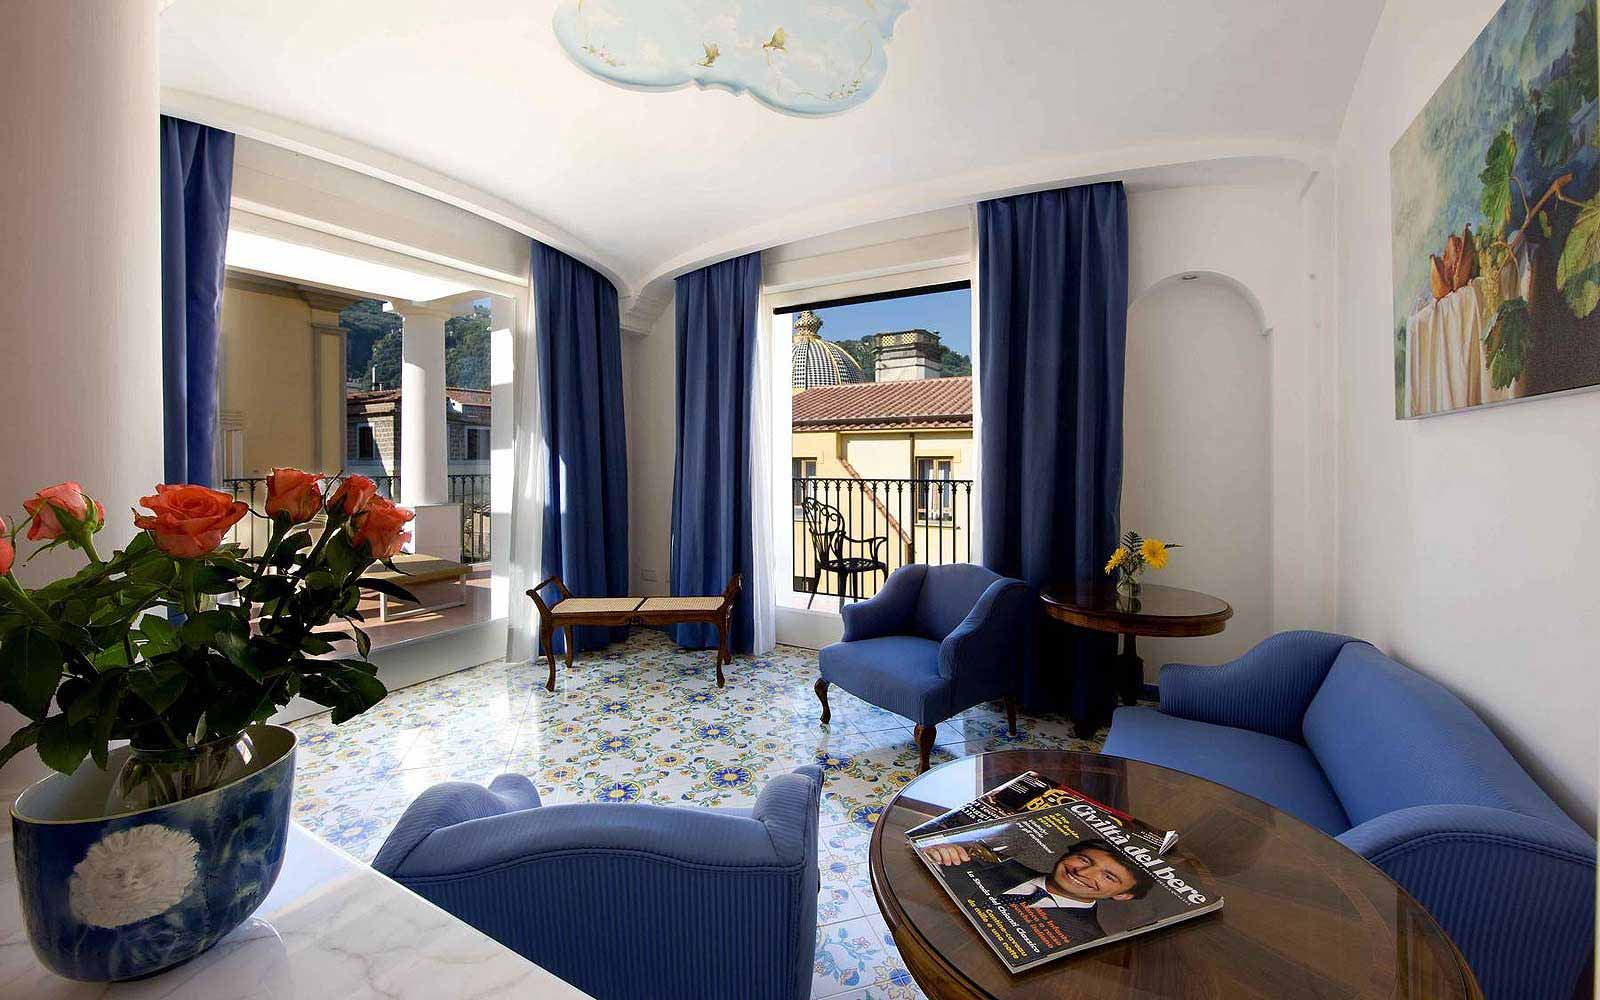 Junior Suite at the Grand Hotel La Favorita